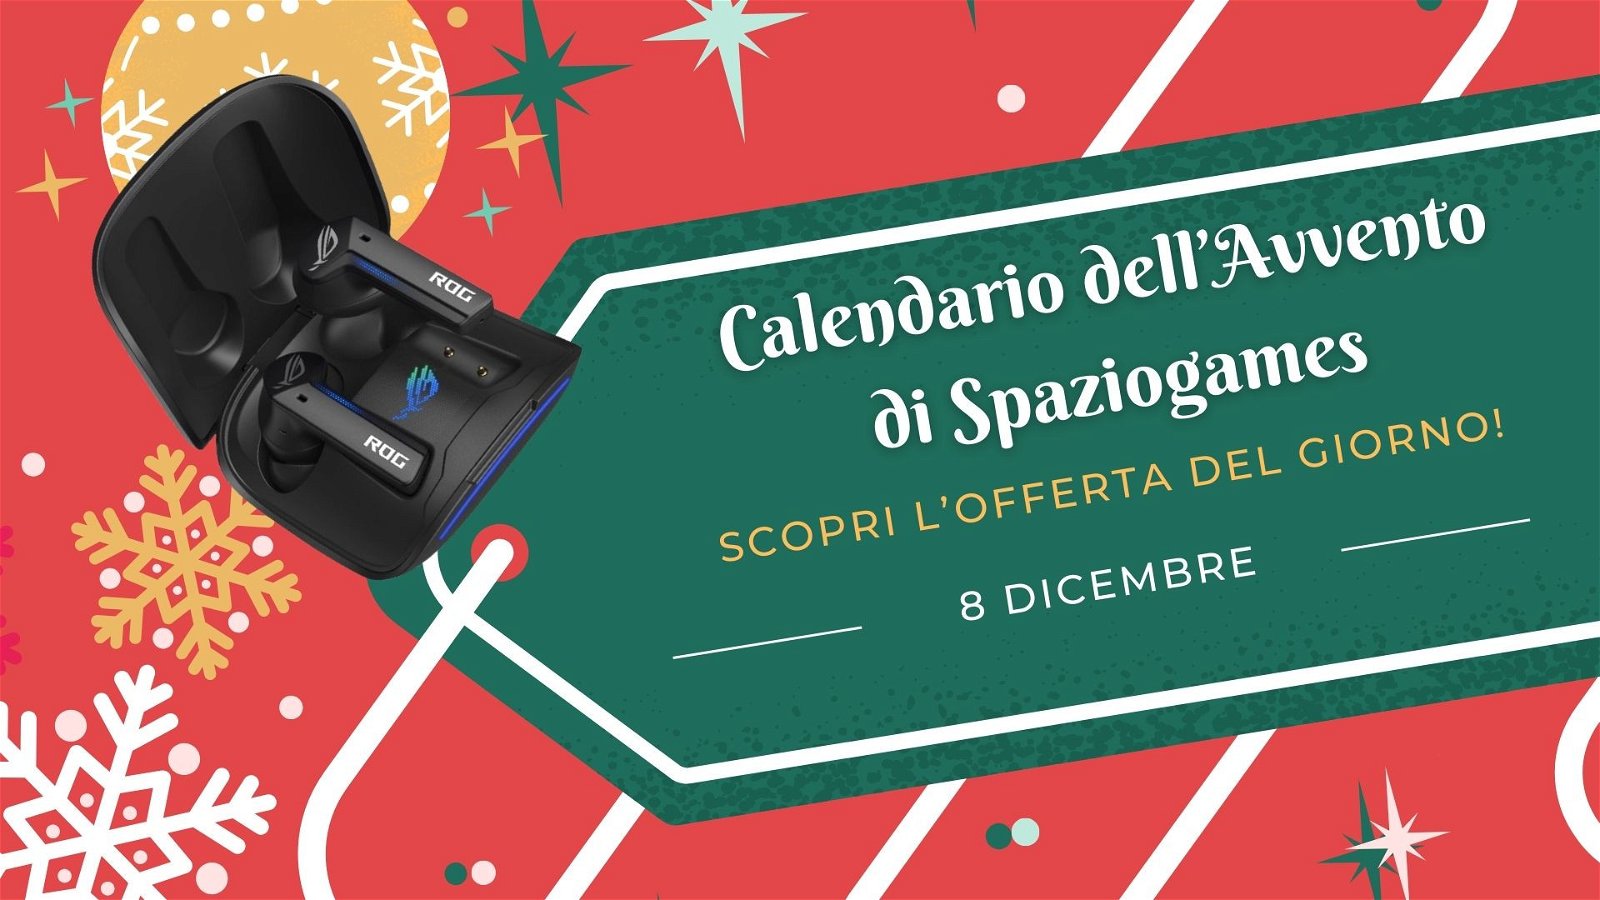 Calendario dell'avvento di Spaziogames: scopri l'offerta dell'8 dicembre